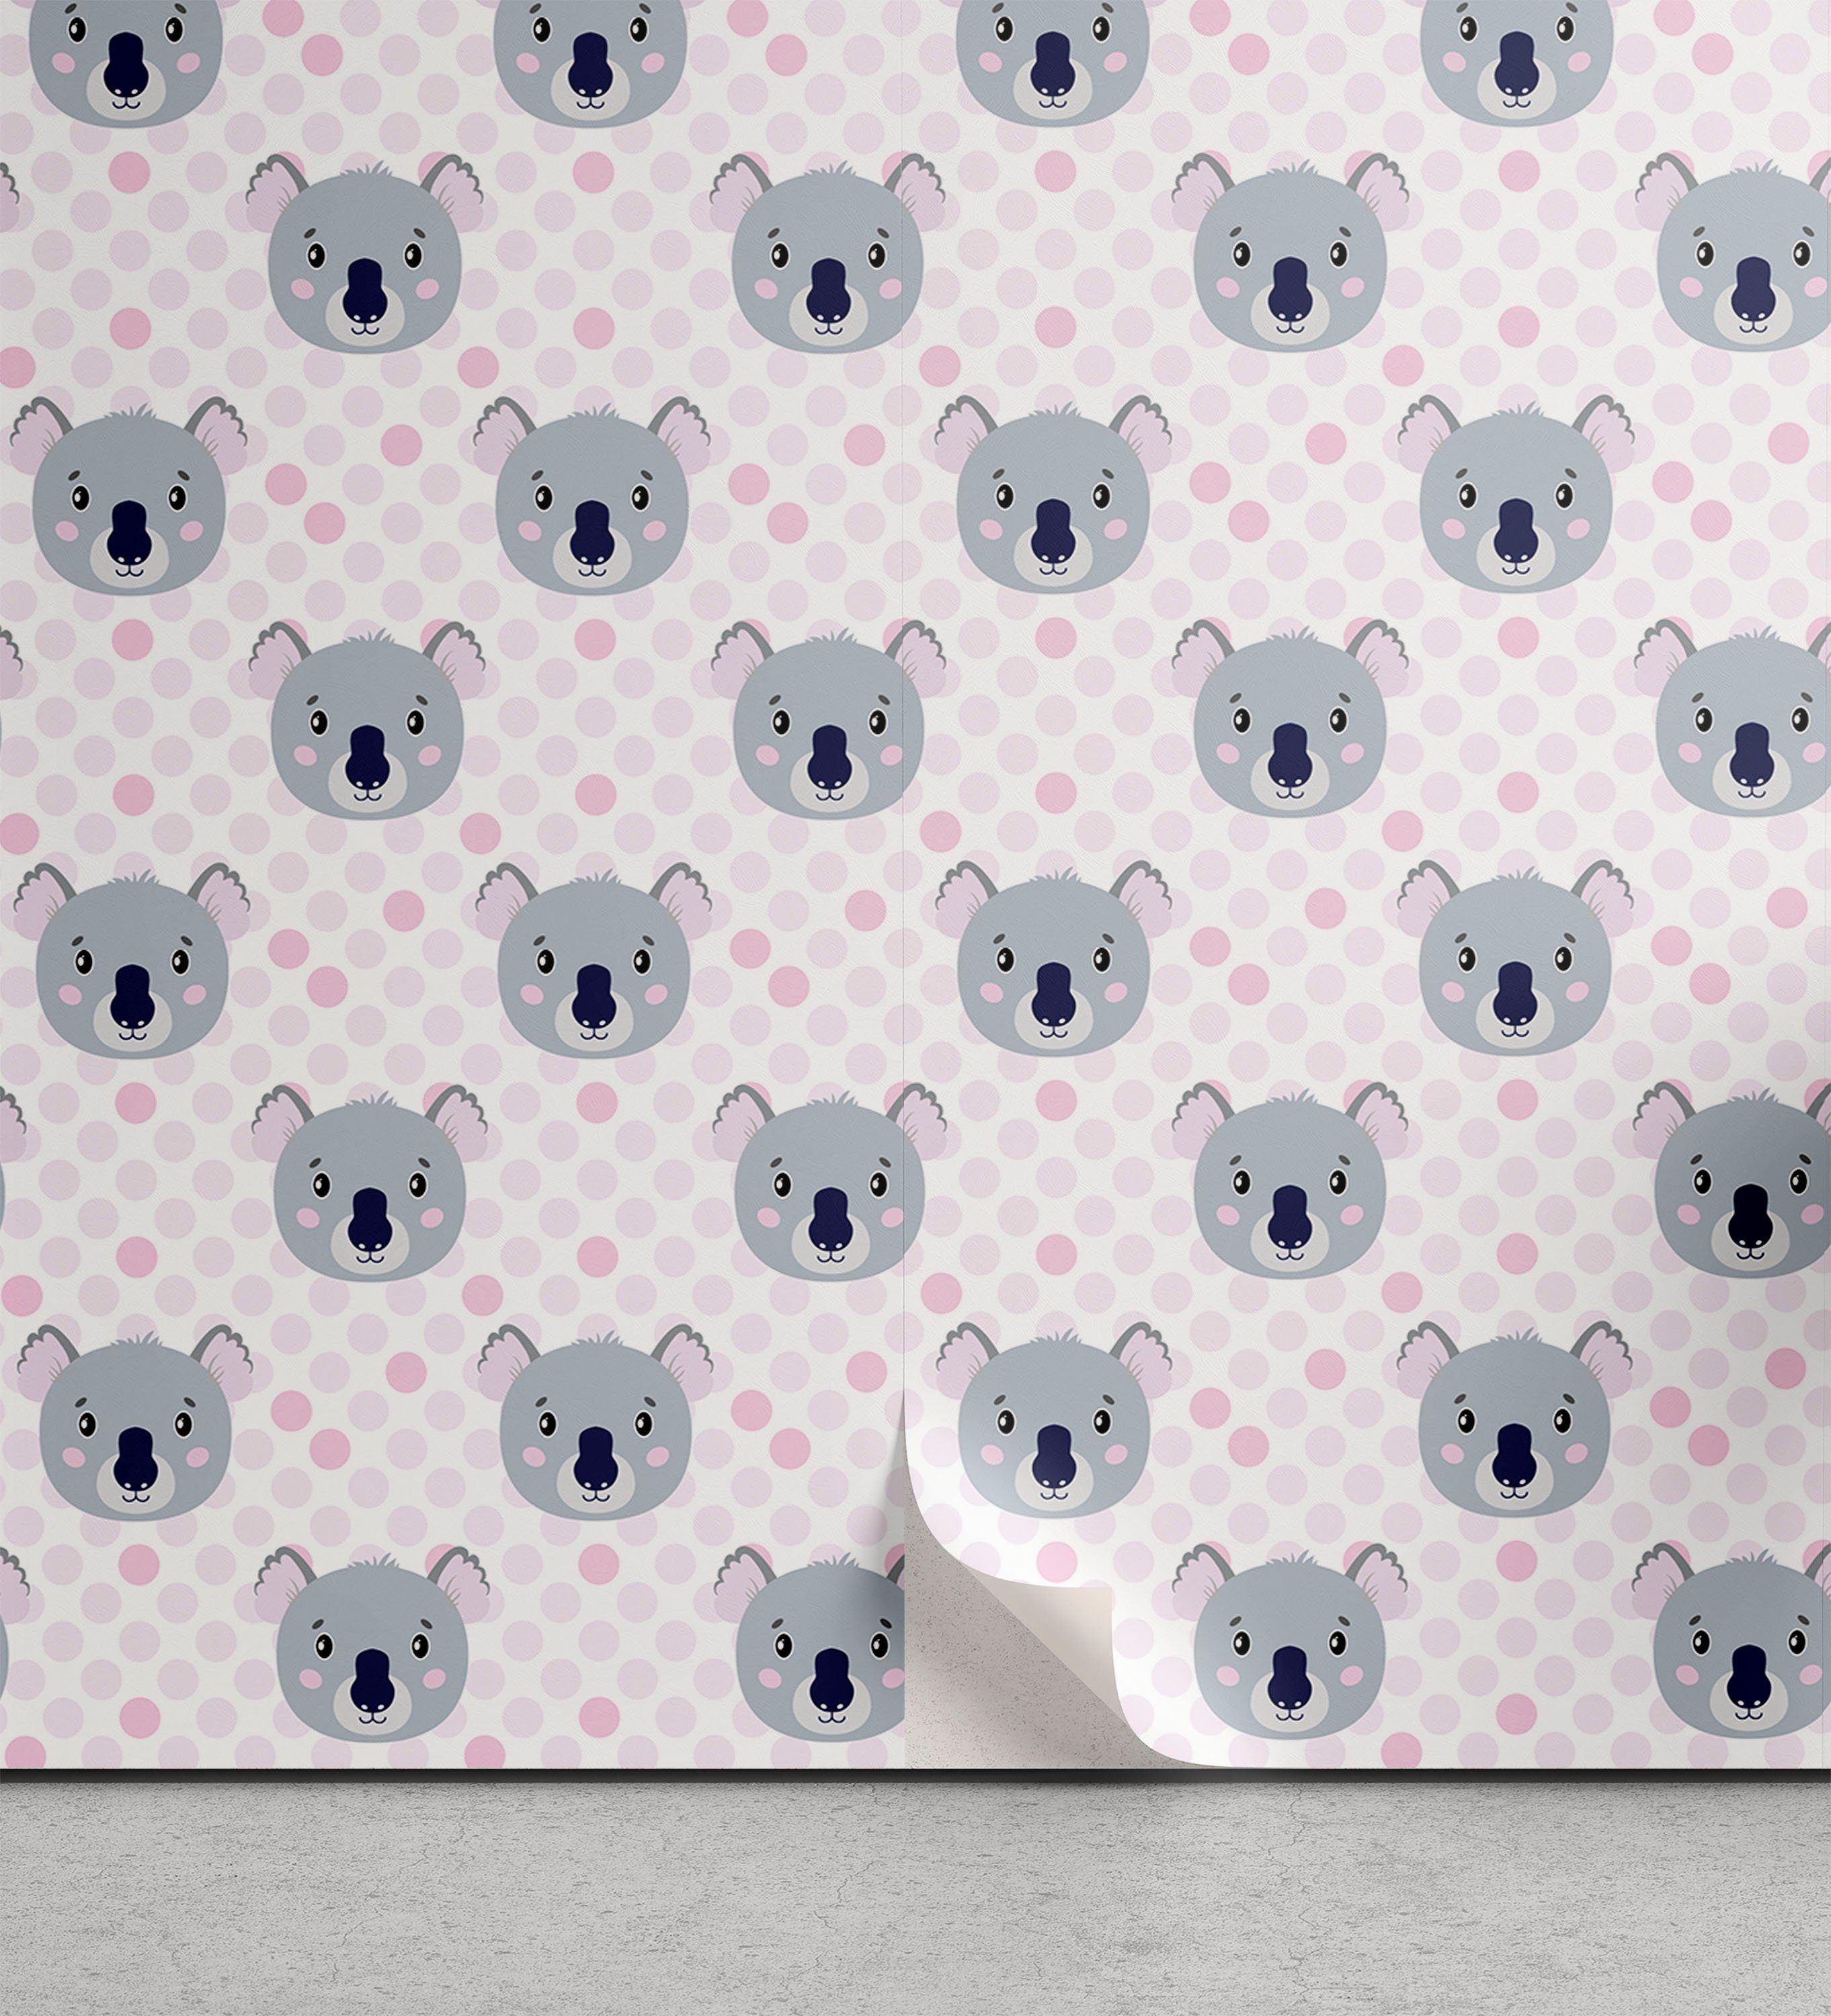 Abakuhaus Vinyltapete selbstklebendes Wohnzimmer Küchenakzent, Kinderzimmer Koala Gesichter und Polka Dots